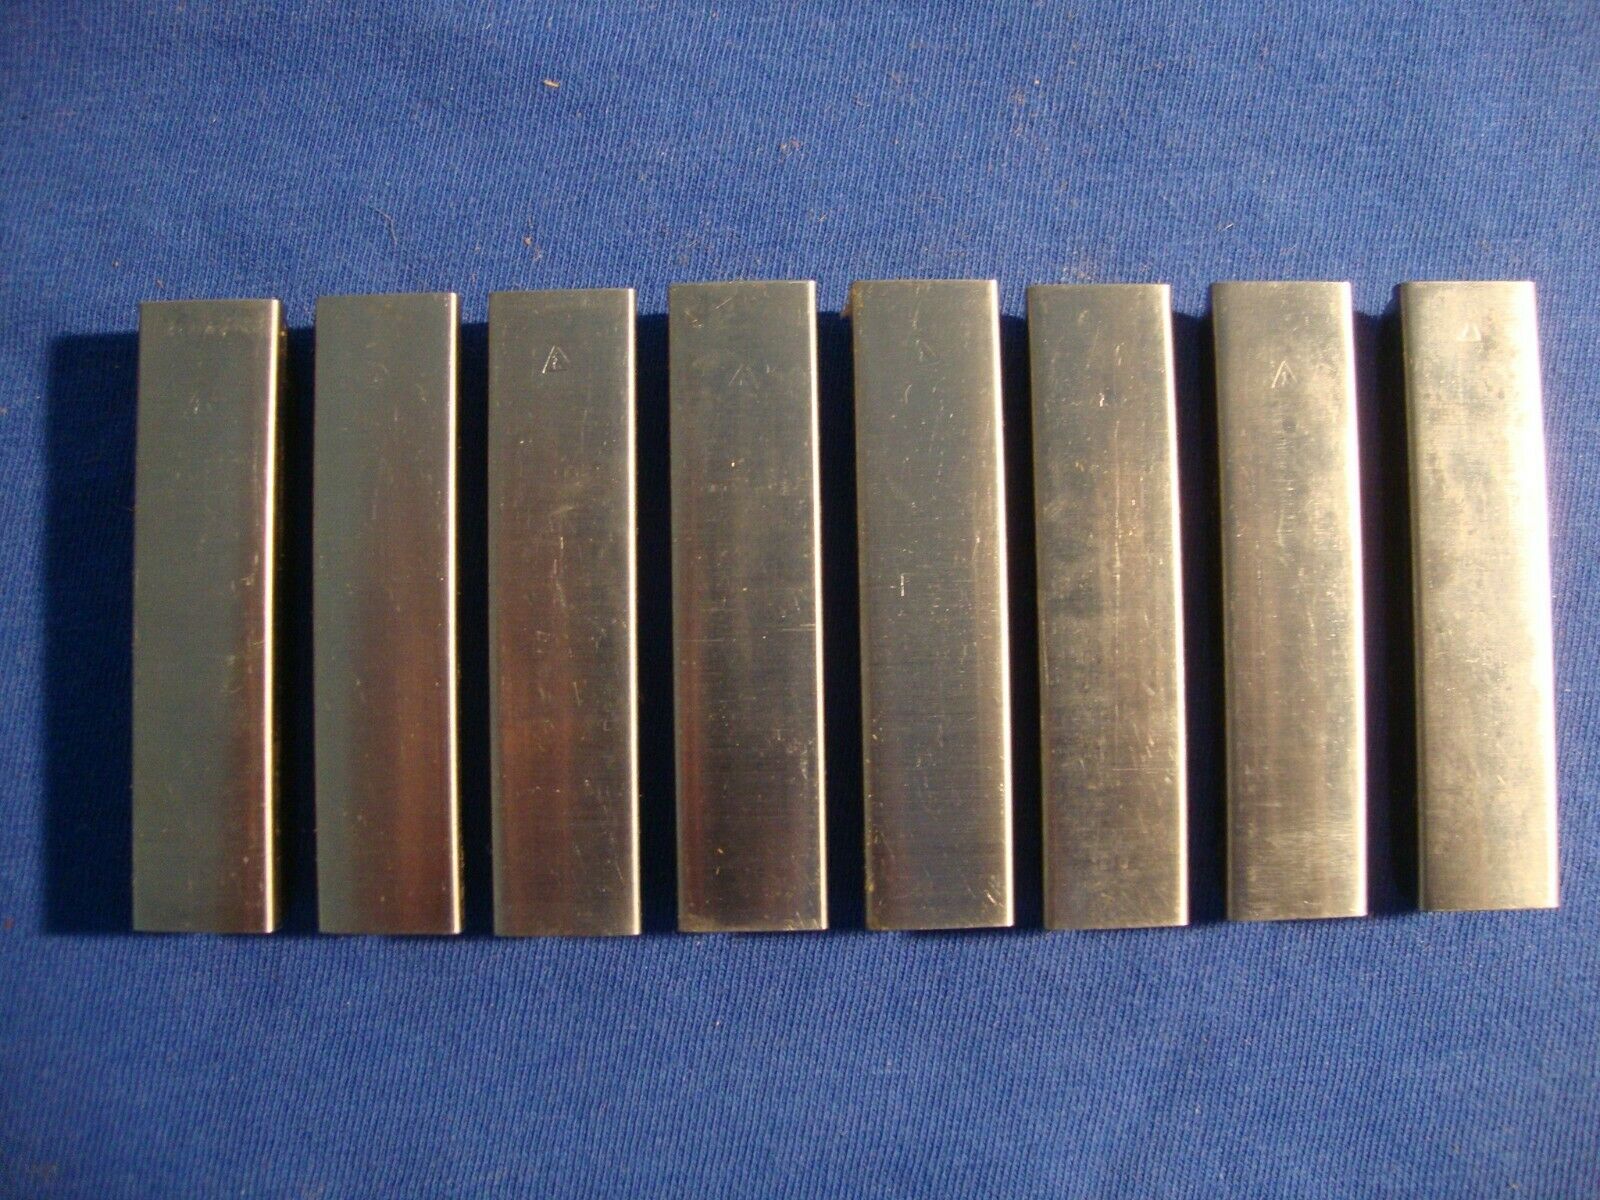 8 Factory Russian Izhevsk Mark Mosin Nagant Stripper Clip 91/30 A Grade